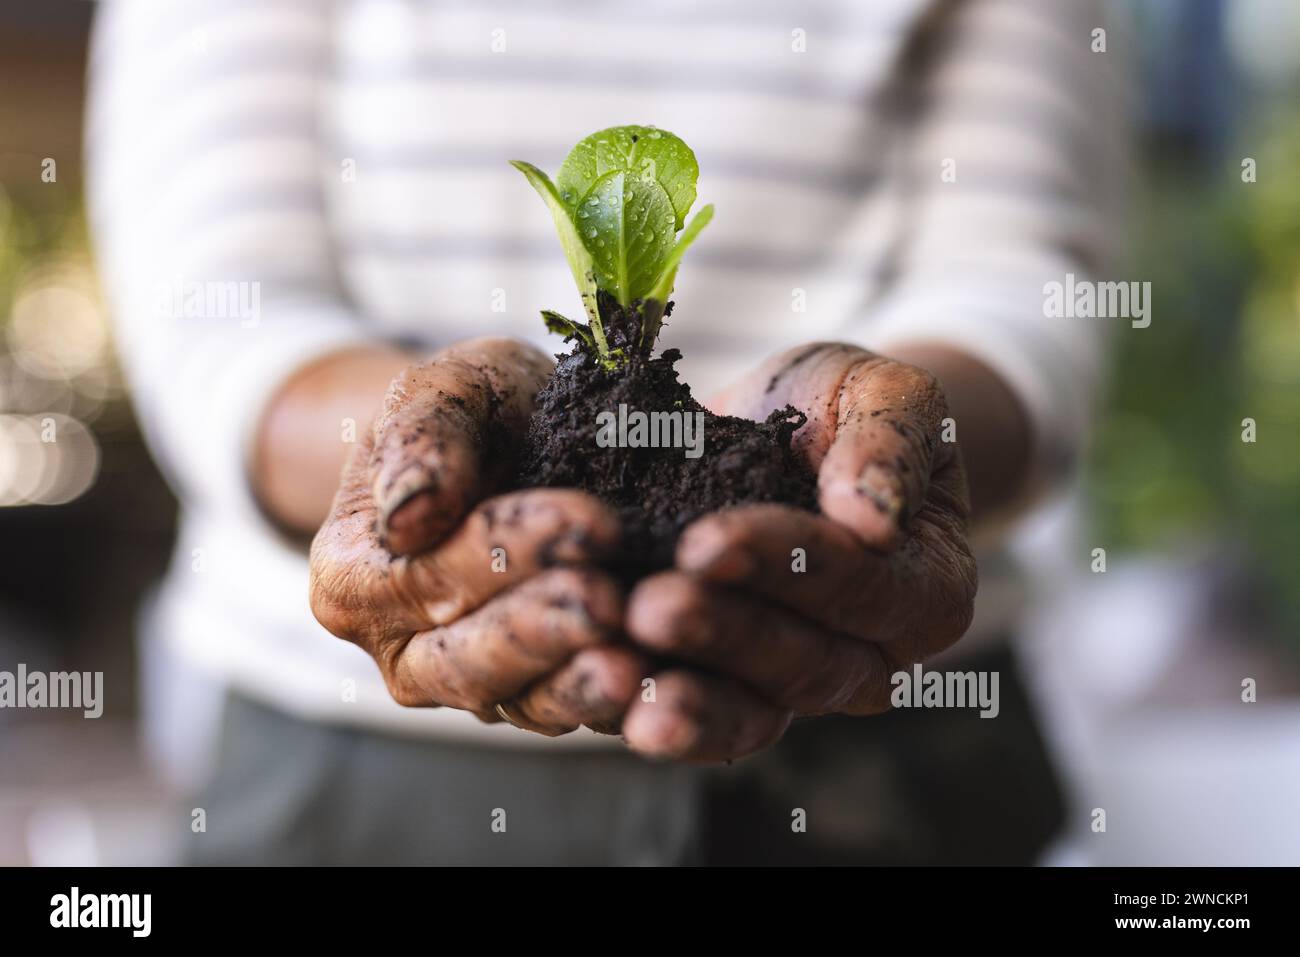 Les mains bercent une jeune plante qui germe du sol, symbolisant la croissance et les soins Banque D'Images